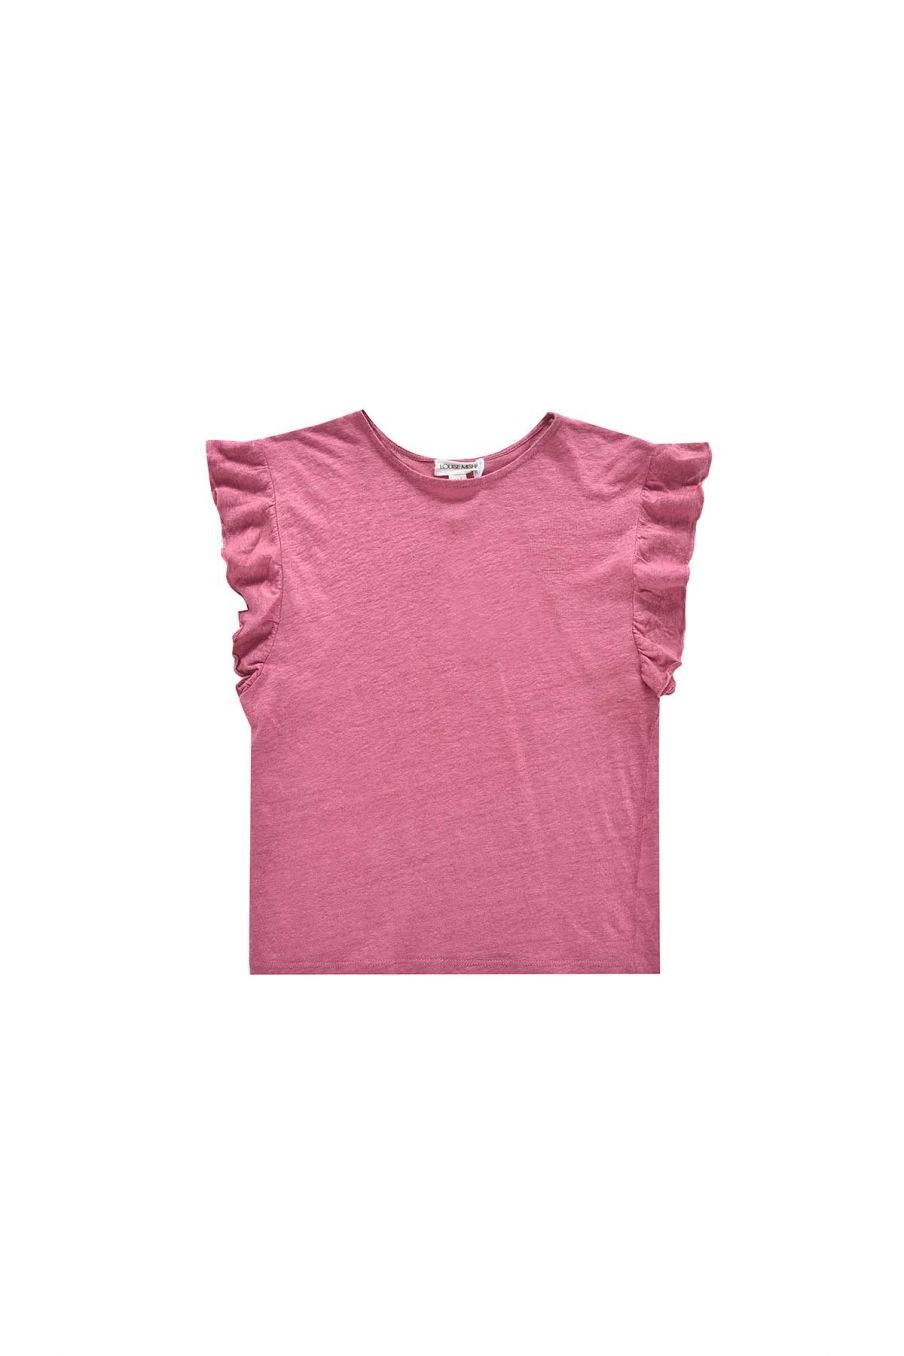 fille-t-shirt-hermance-raspberry